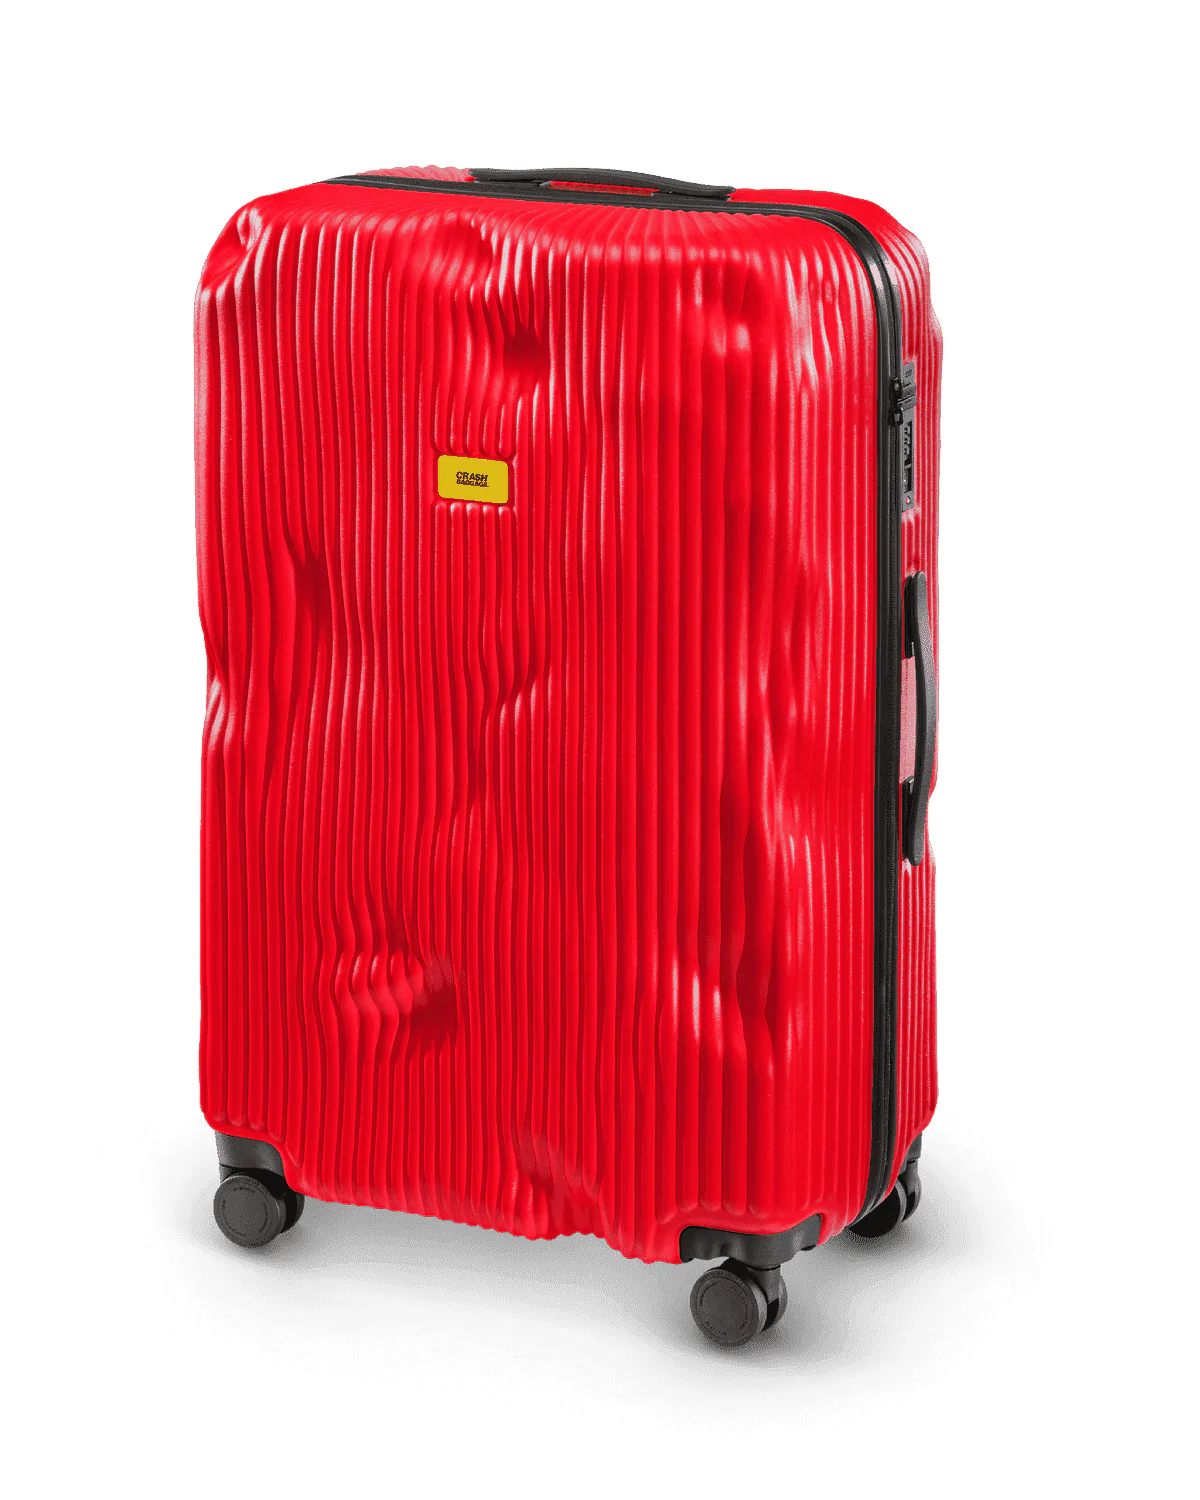 Crash Baggage Stripe Large, Red